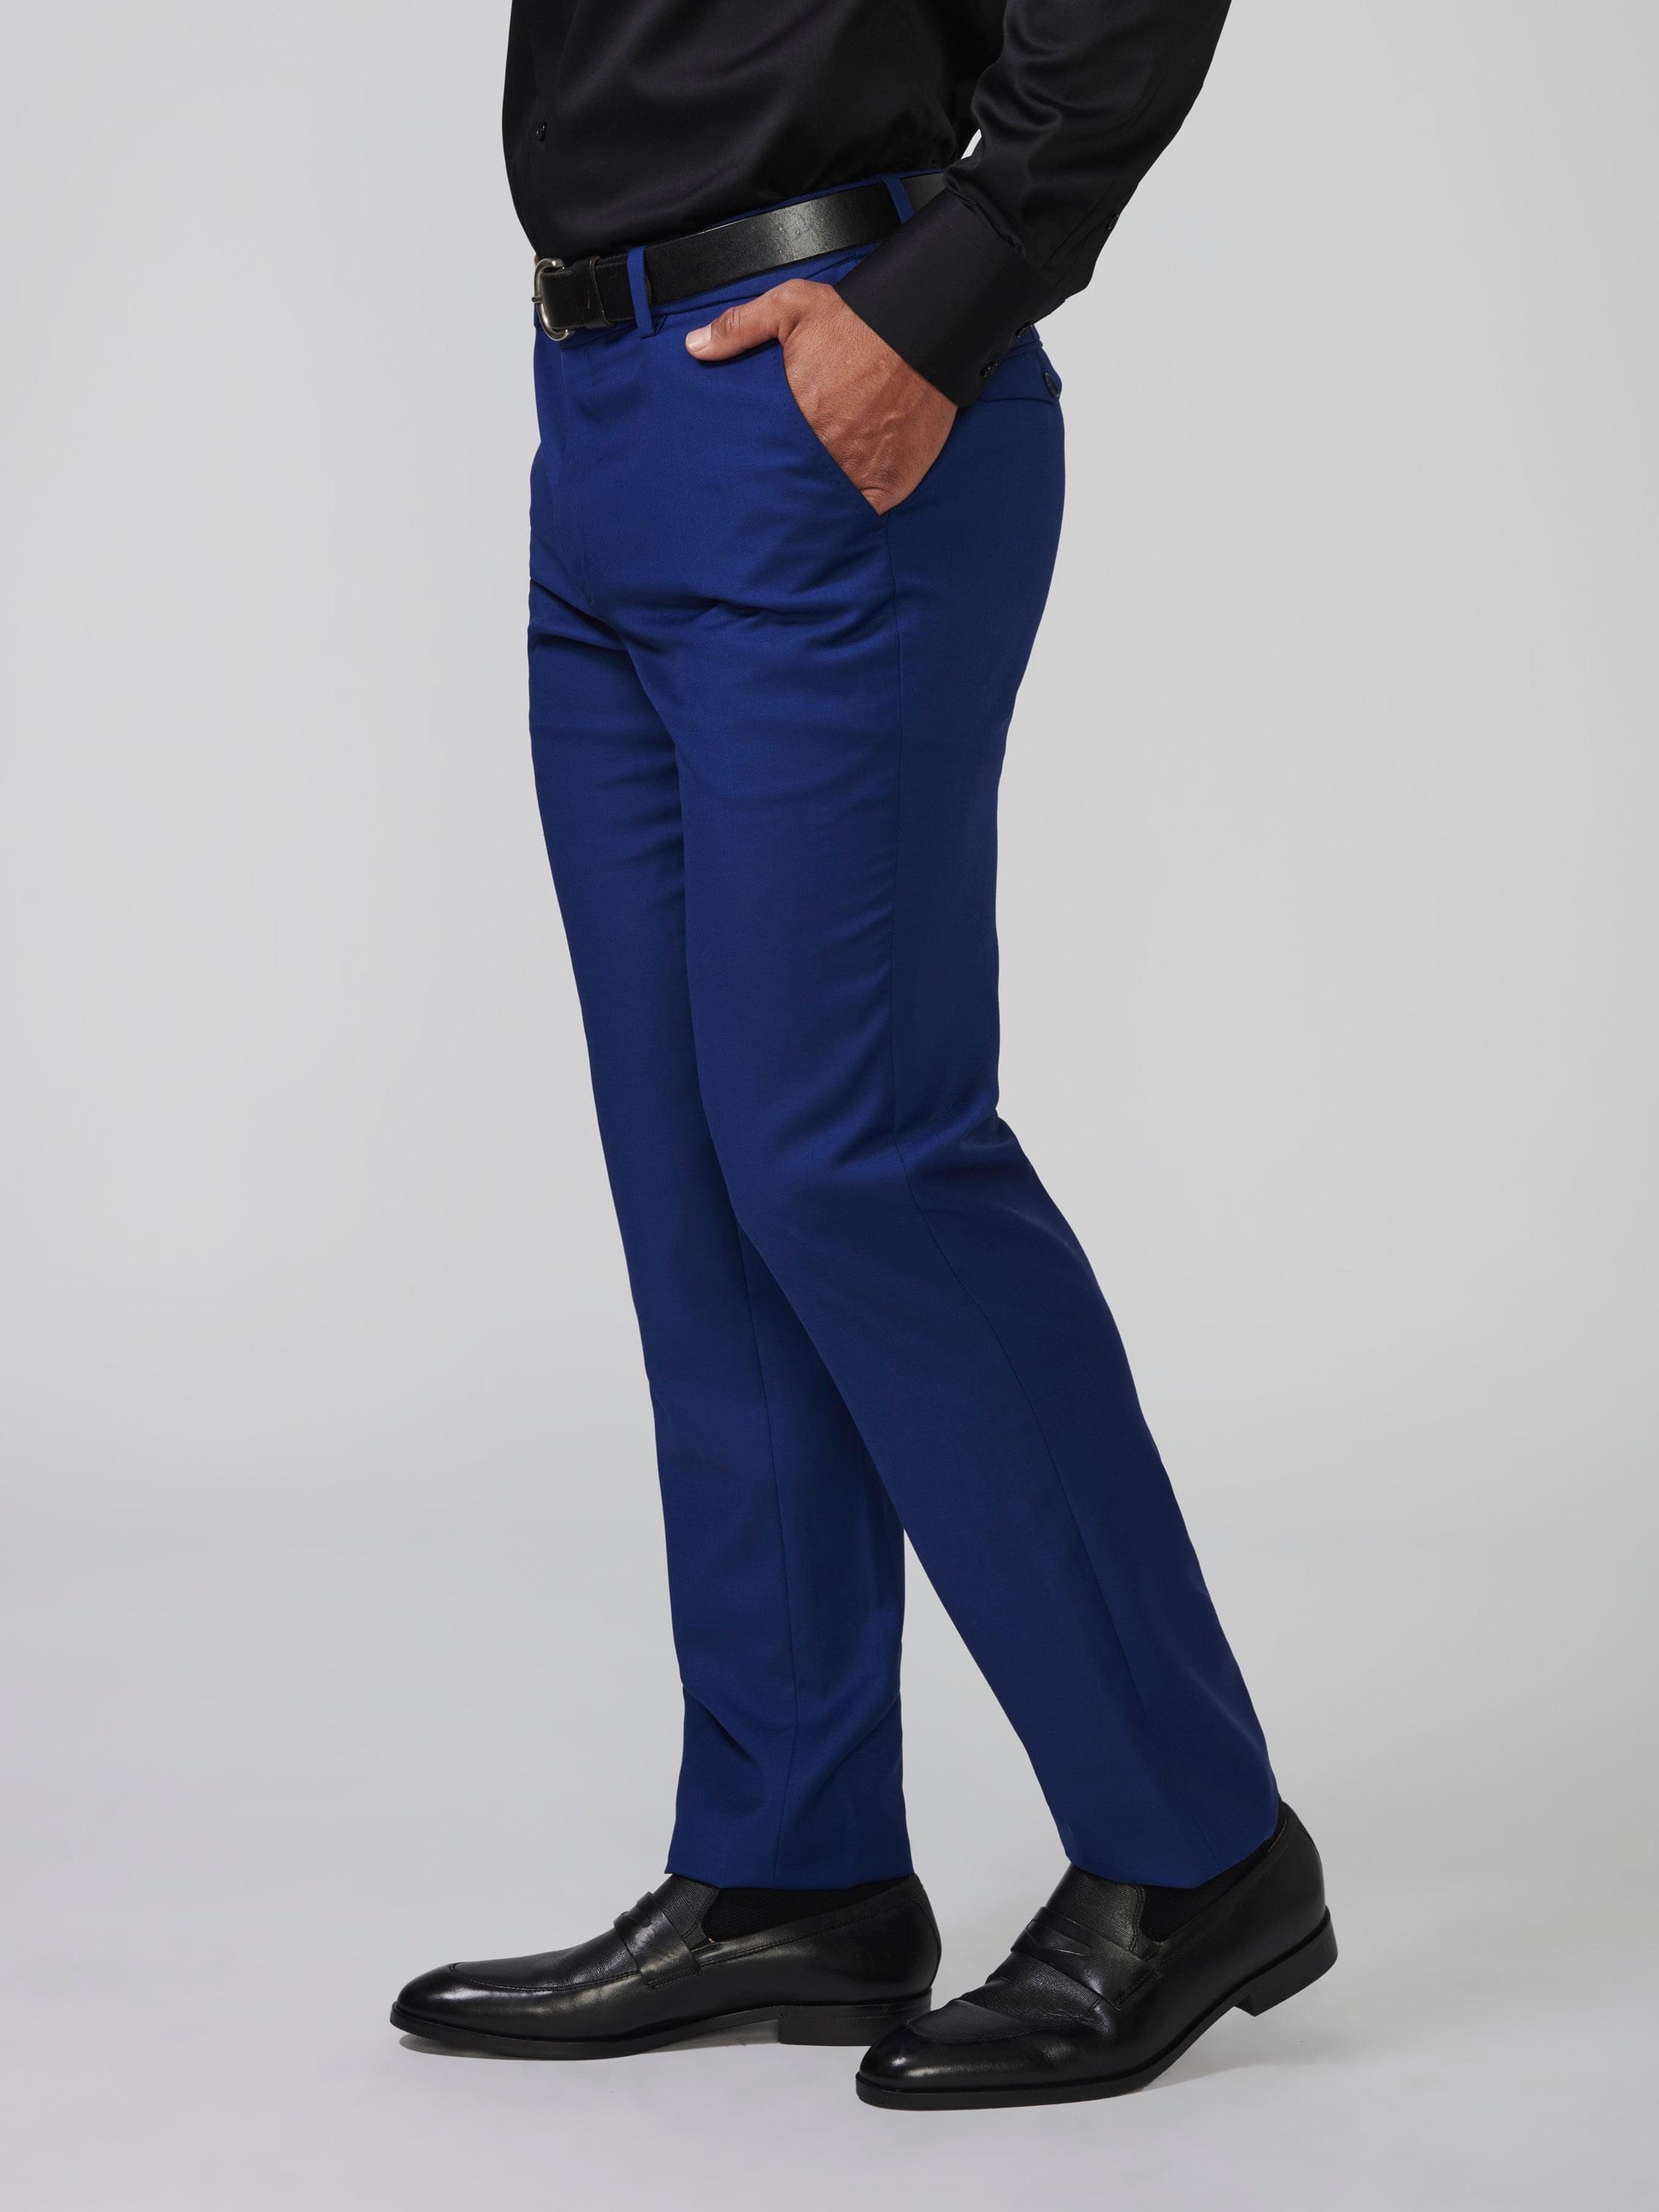 Wool Blend Dress Pants - Cobalt | The Man Refined